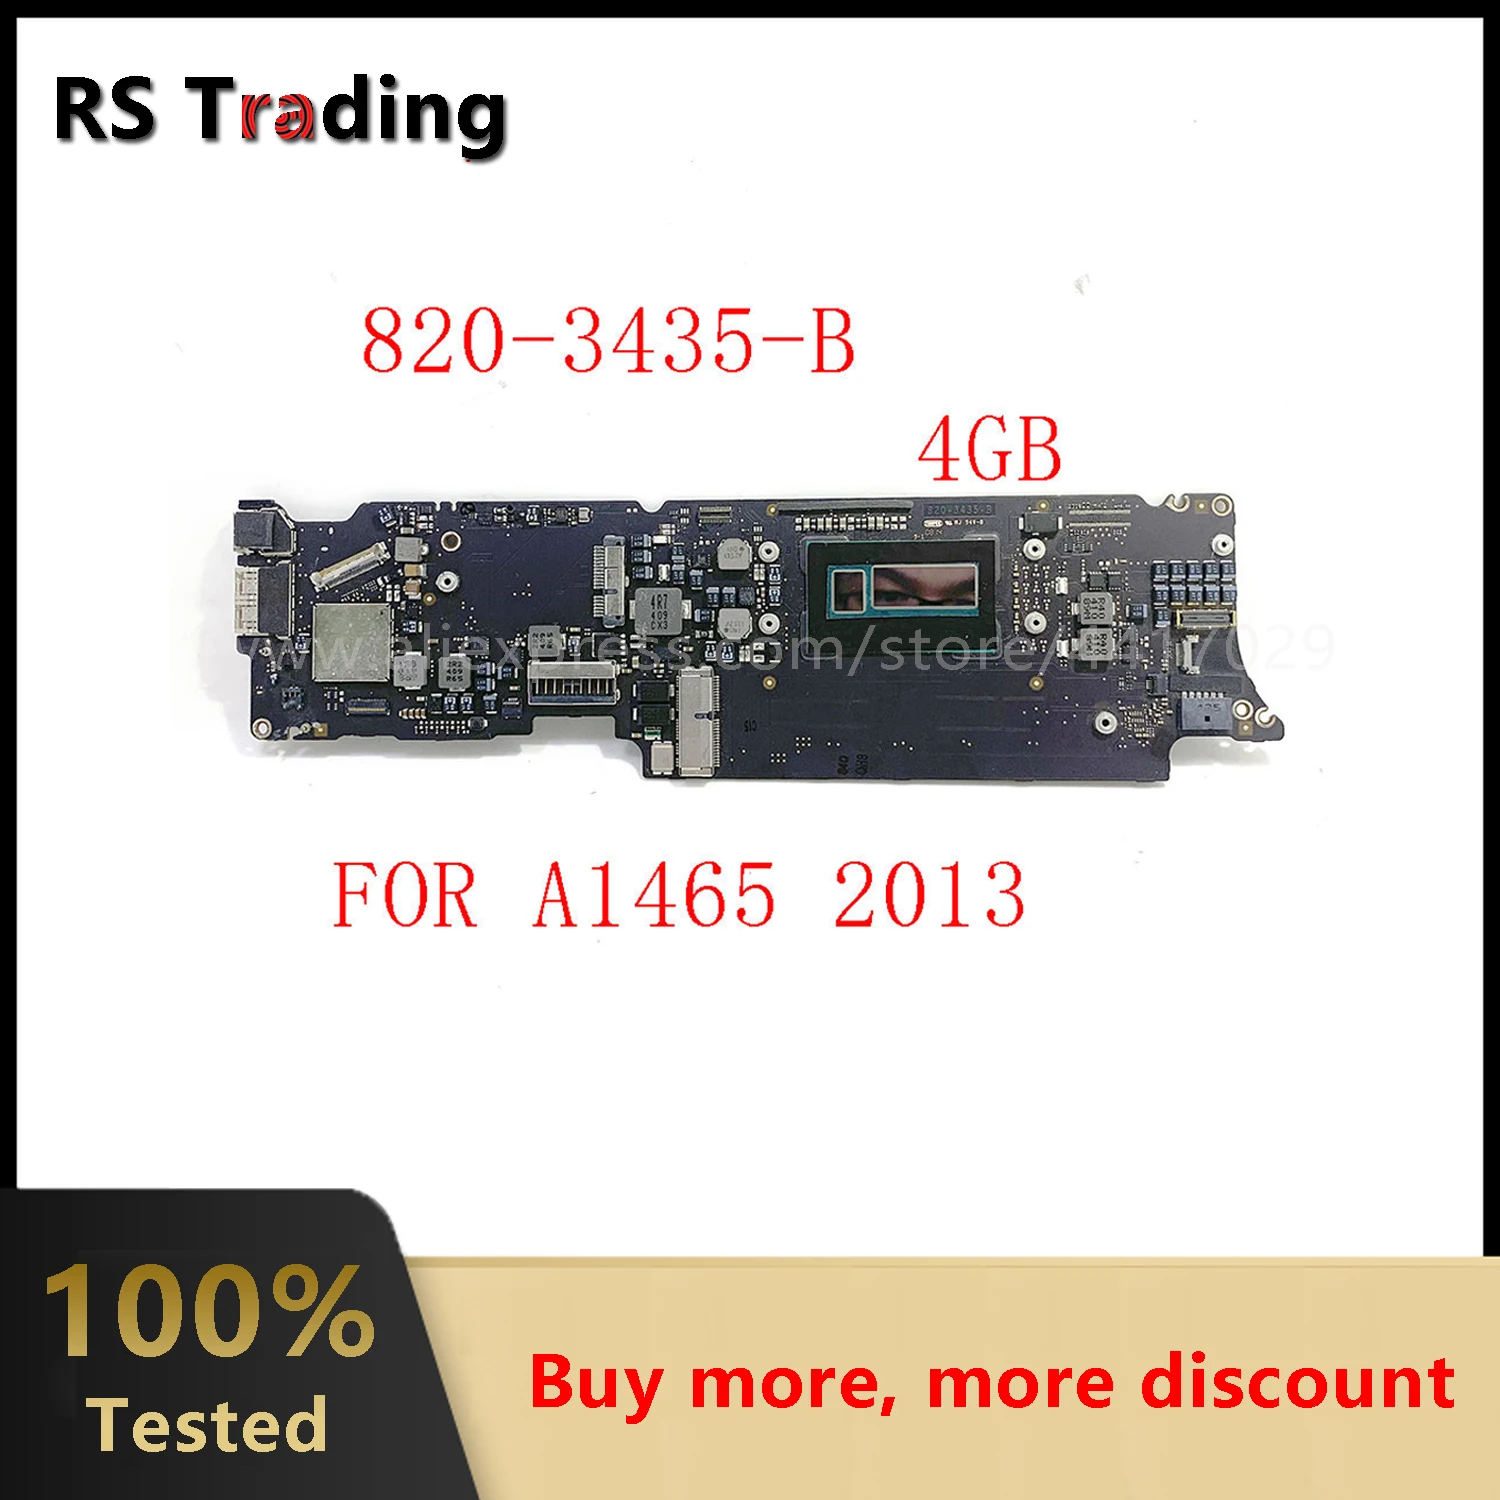 

A1465 Logic Board 11\" A1465 Motherboard 2013-2014 Year I5-4250u 4GB 1.3Ghz 1.4Ghz 820-3435-A 820-3435-B For Macbook Air